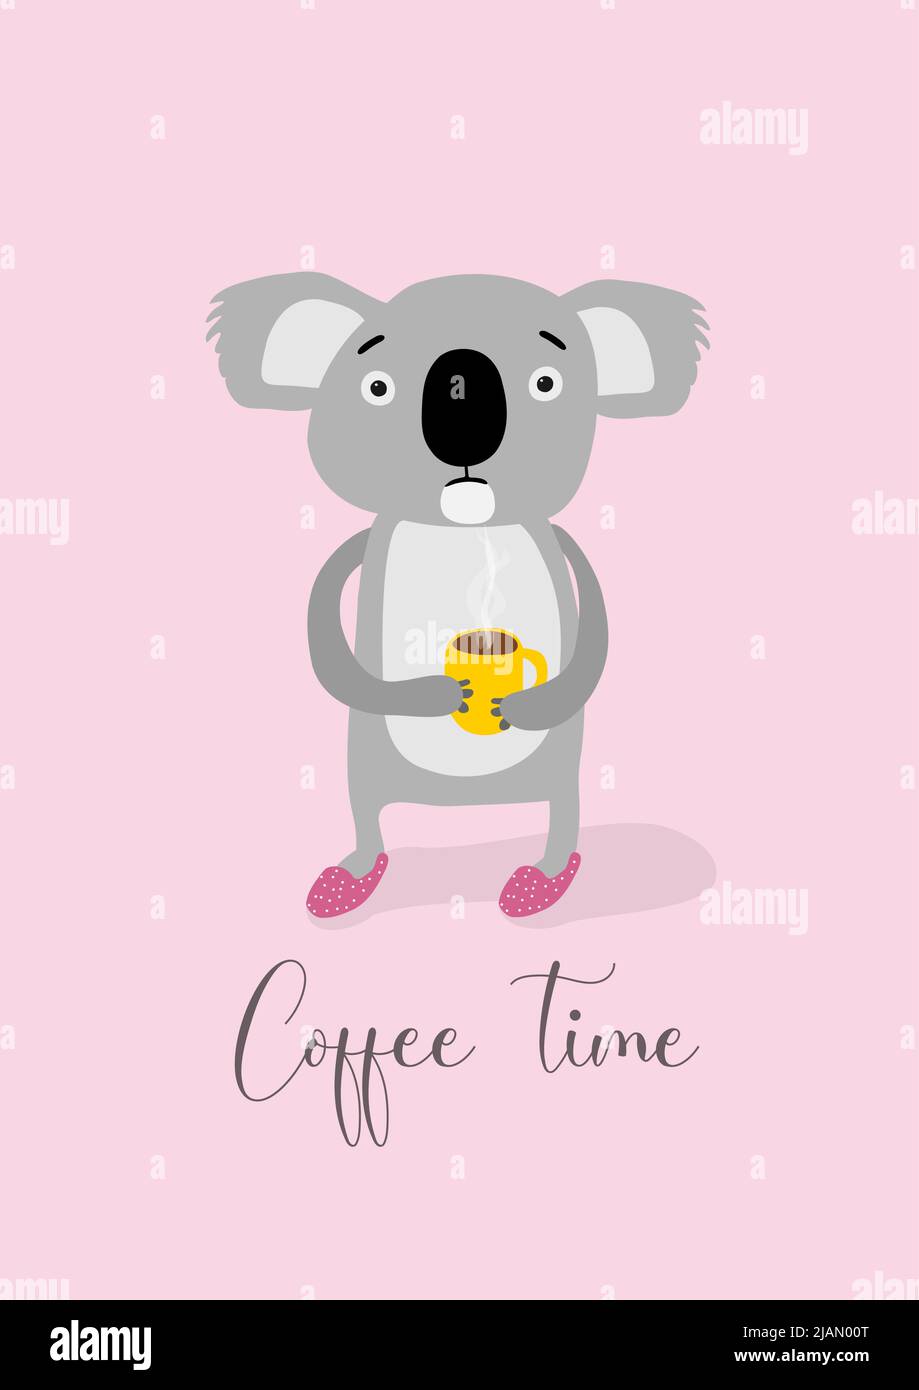 Illustration vectorisée d'un koala buvant un café pour rester éveillé avec ses yeux grands ouverts sur un fond rose avec des points blancs et porte des chaussons. Illustration de Vecteur